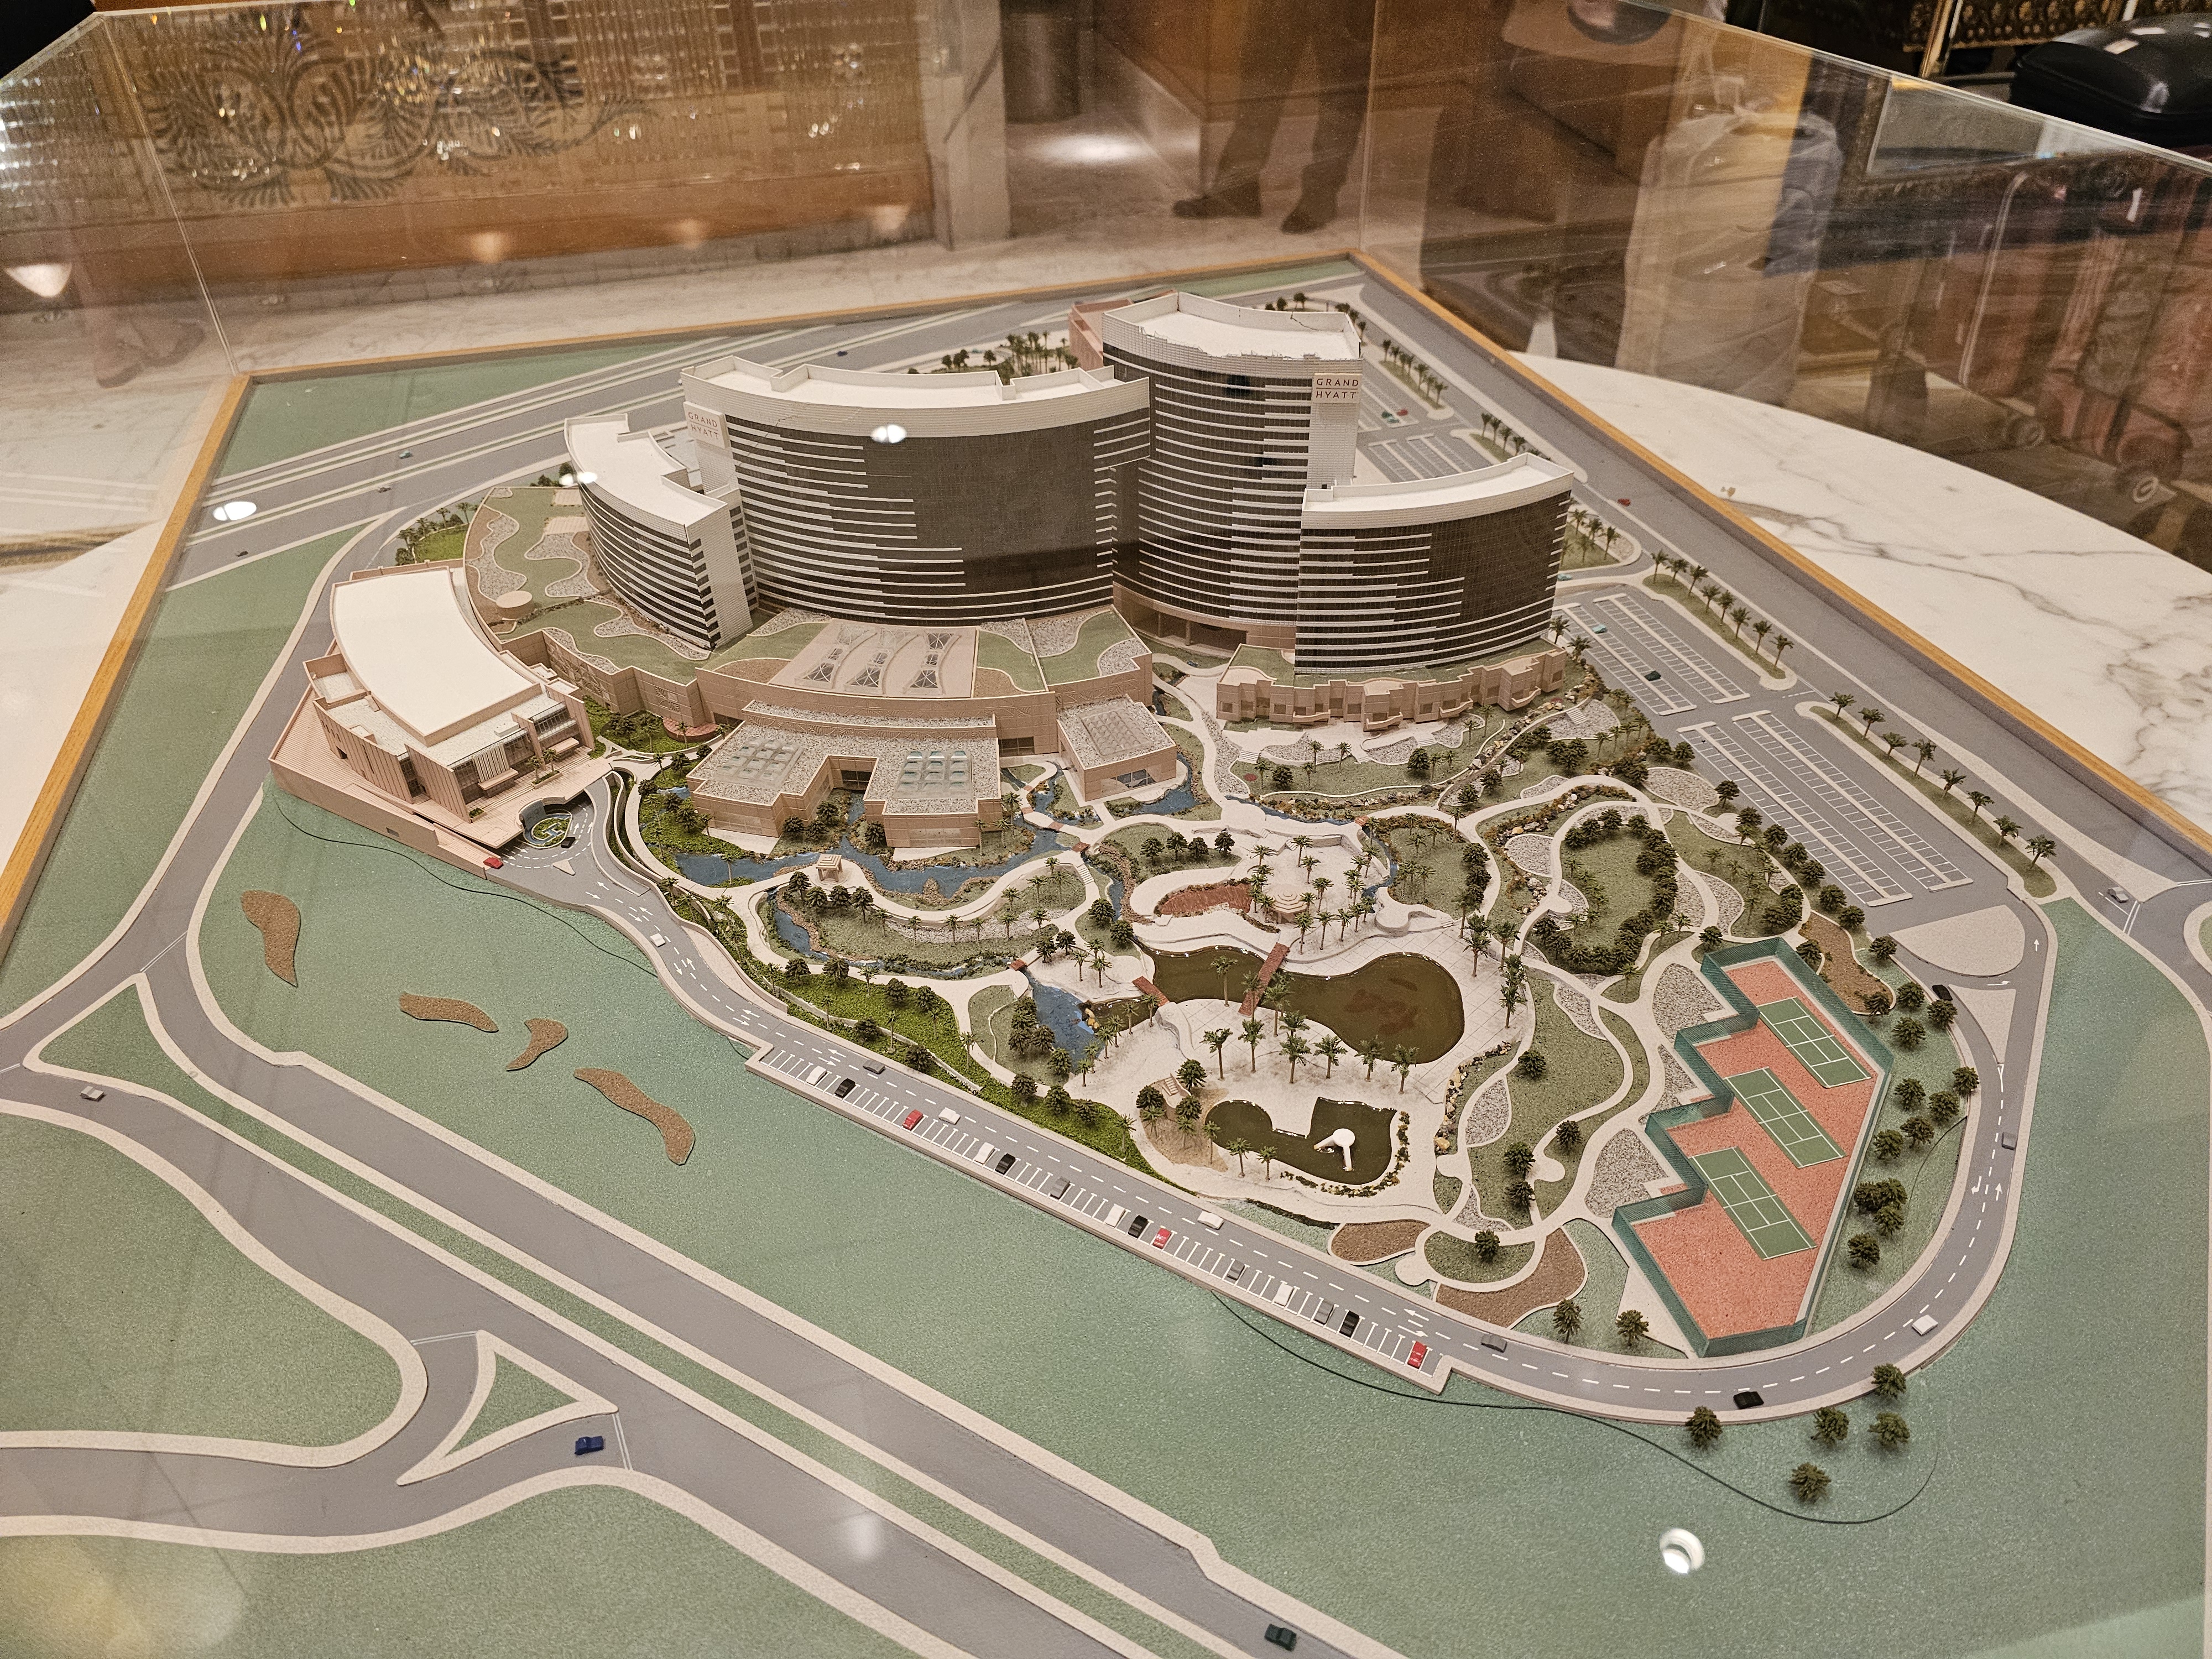 Grand Hyatt Dubai
˸